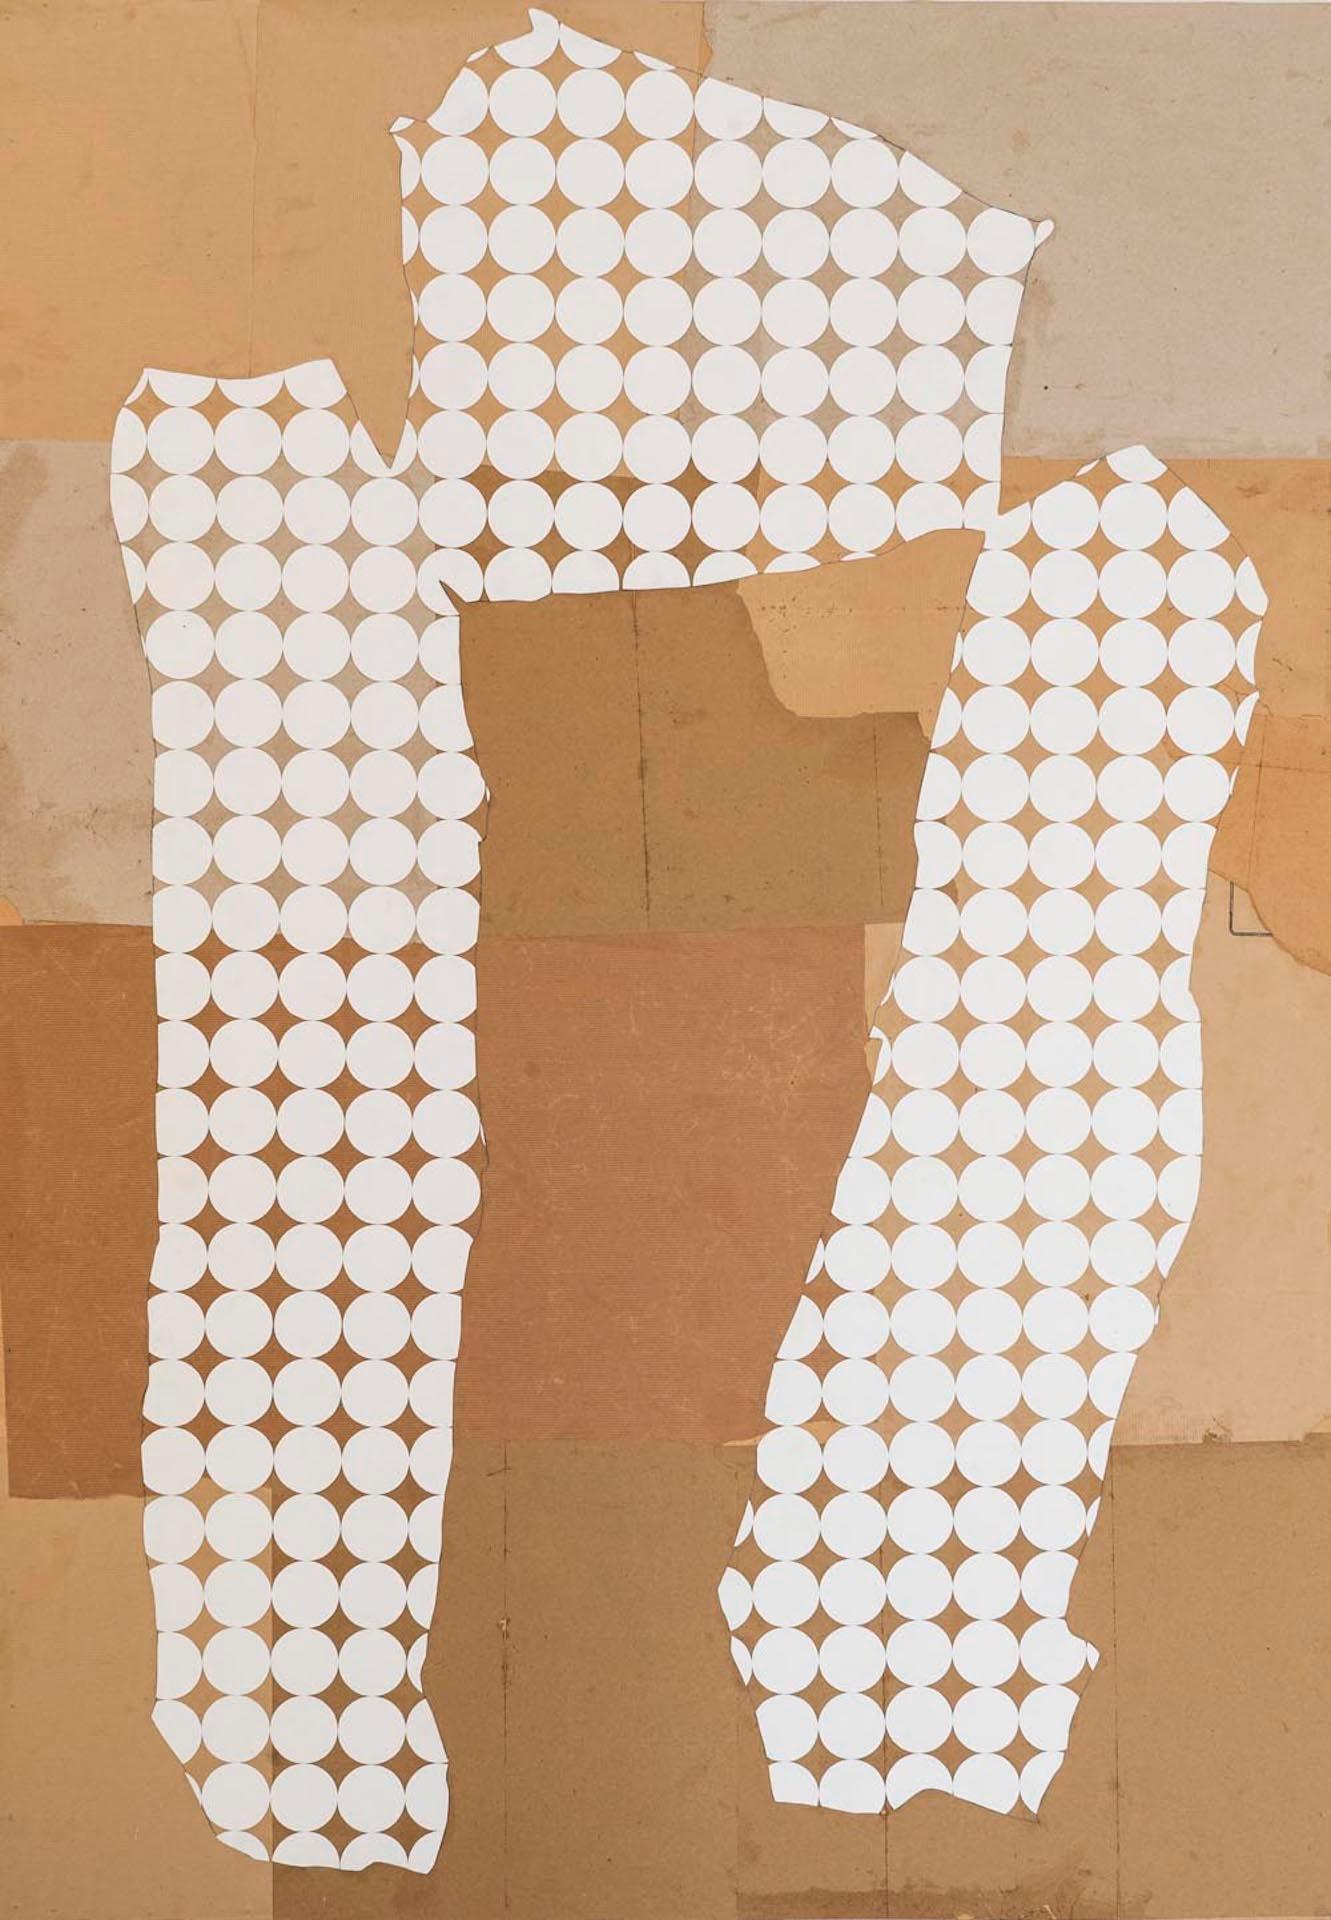 Femmage ist ein diptychonartiges, minimalistisches Kunstwerk von Nicola Grellier. Die kontrastreichen Farbtöne und die starke Bildsprache in Verbindung mit der schieren Größe dieser Werke machen sie zu einem Statement.
Die Serie Femmage, die direkt